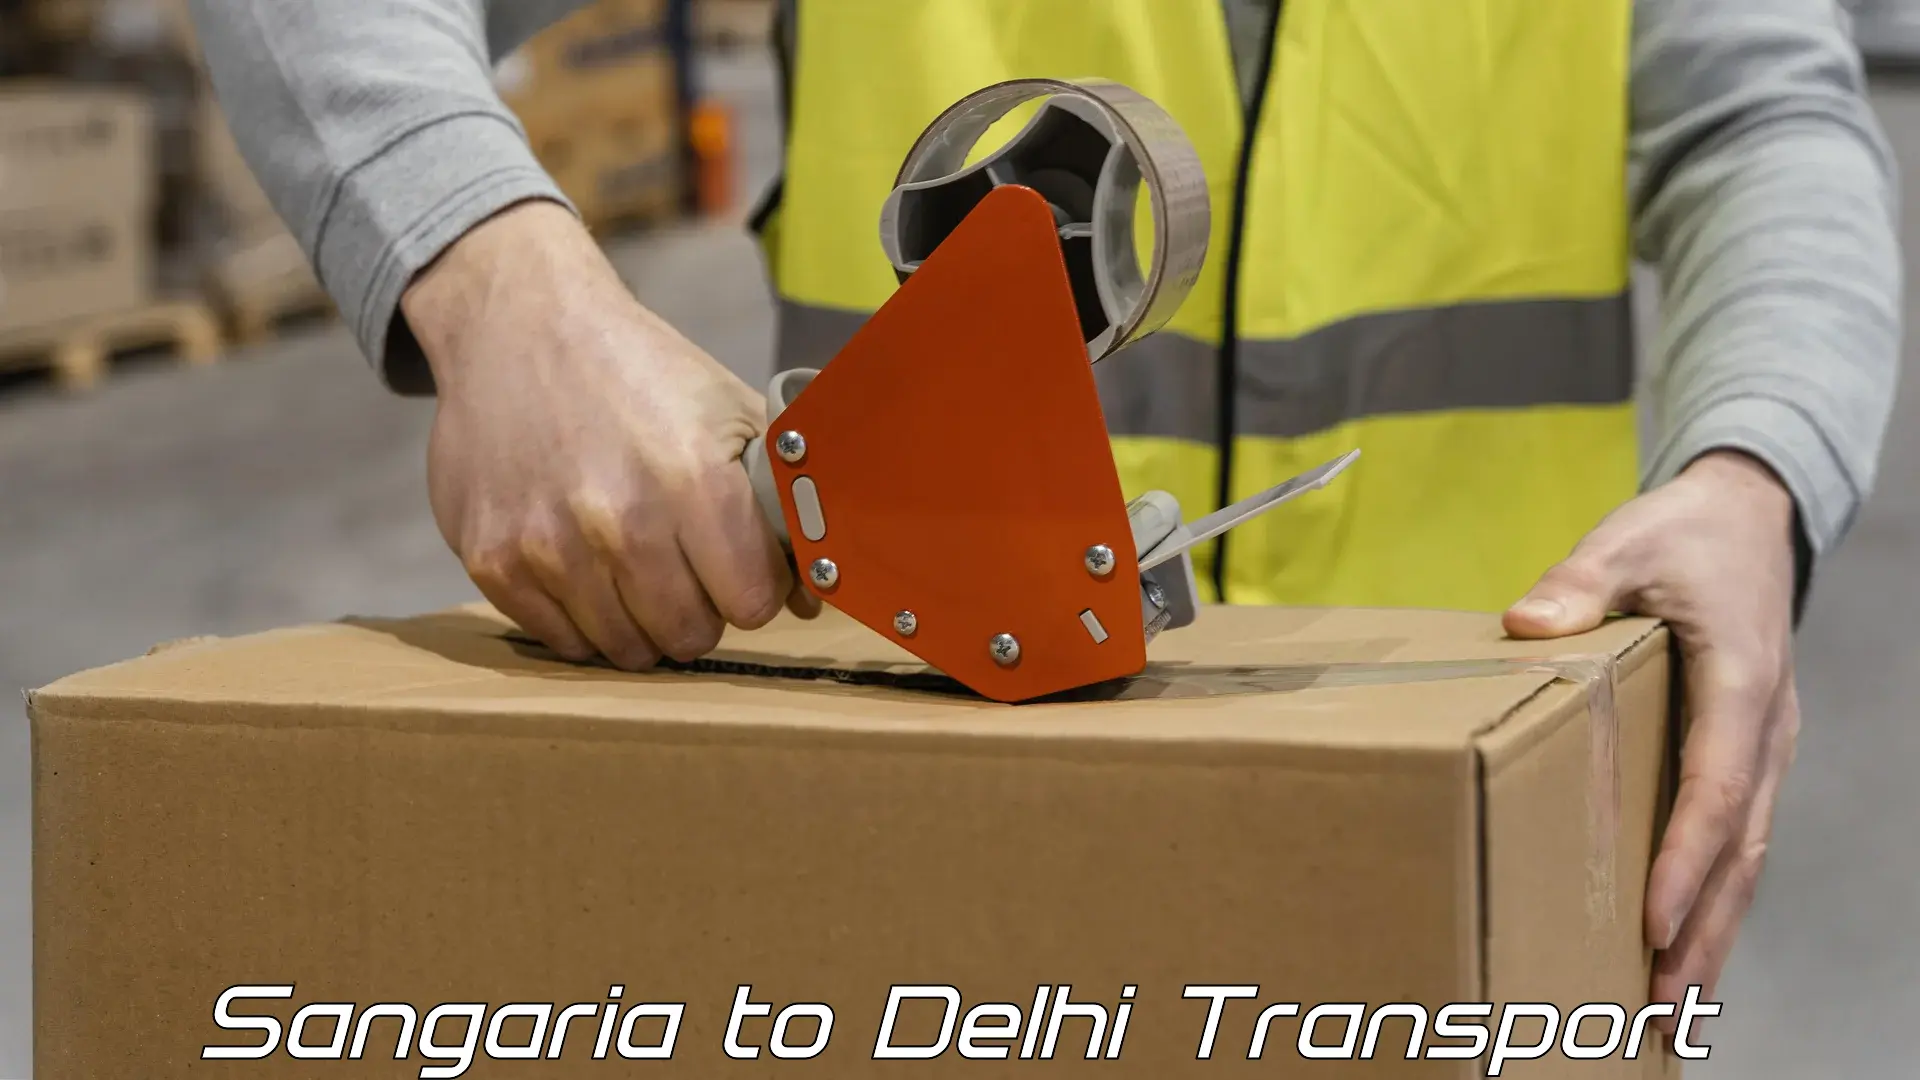 Cargo transport services Sangaria to Jamia Millia Islamia New Delhi